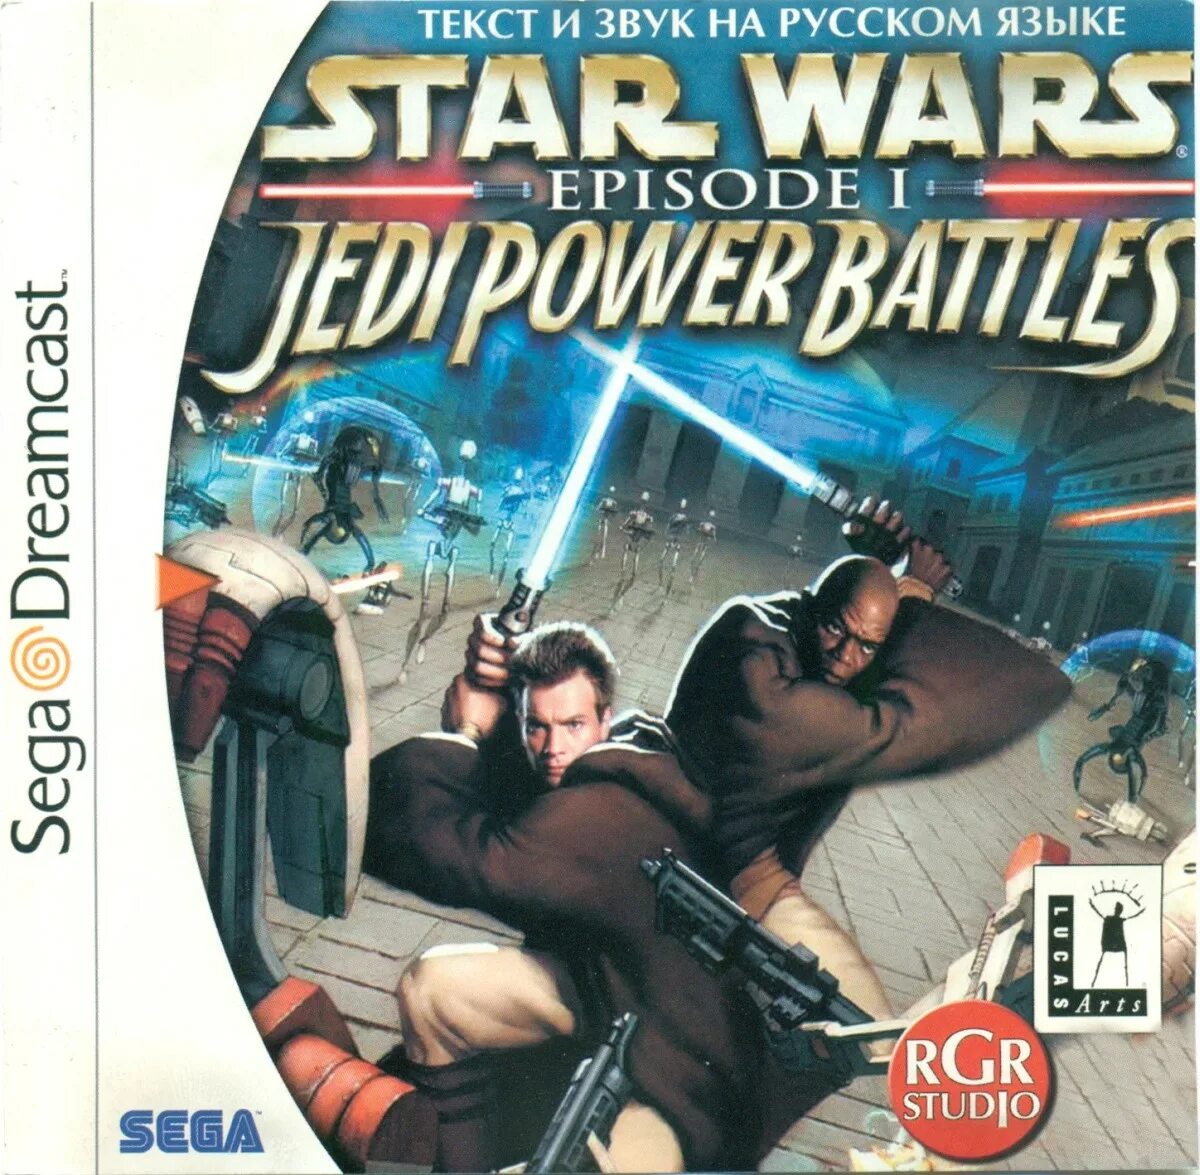 Sega Dreamcast Star Wars Episode 1. Star Wars Episode 1 Jedi Power Battles. Star Wars Episode i Jedi Power Battles ps1. Star Wars Jedi Power Battles ps1 Disc.